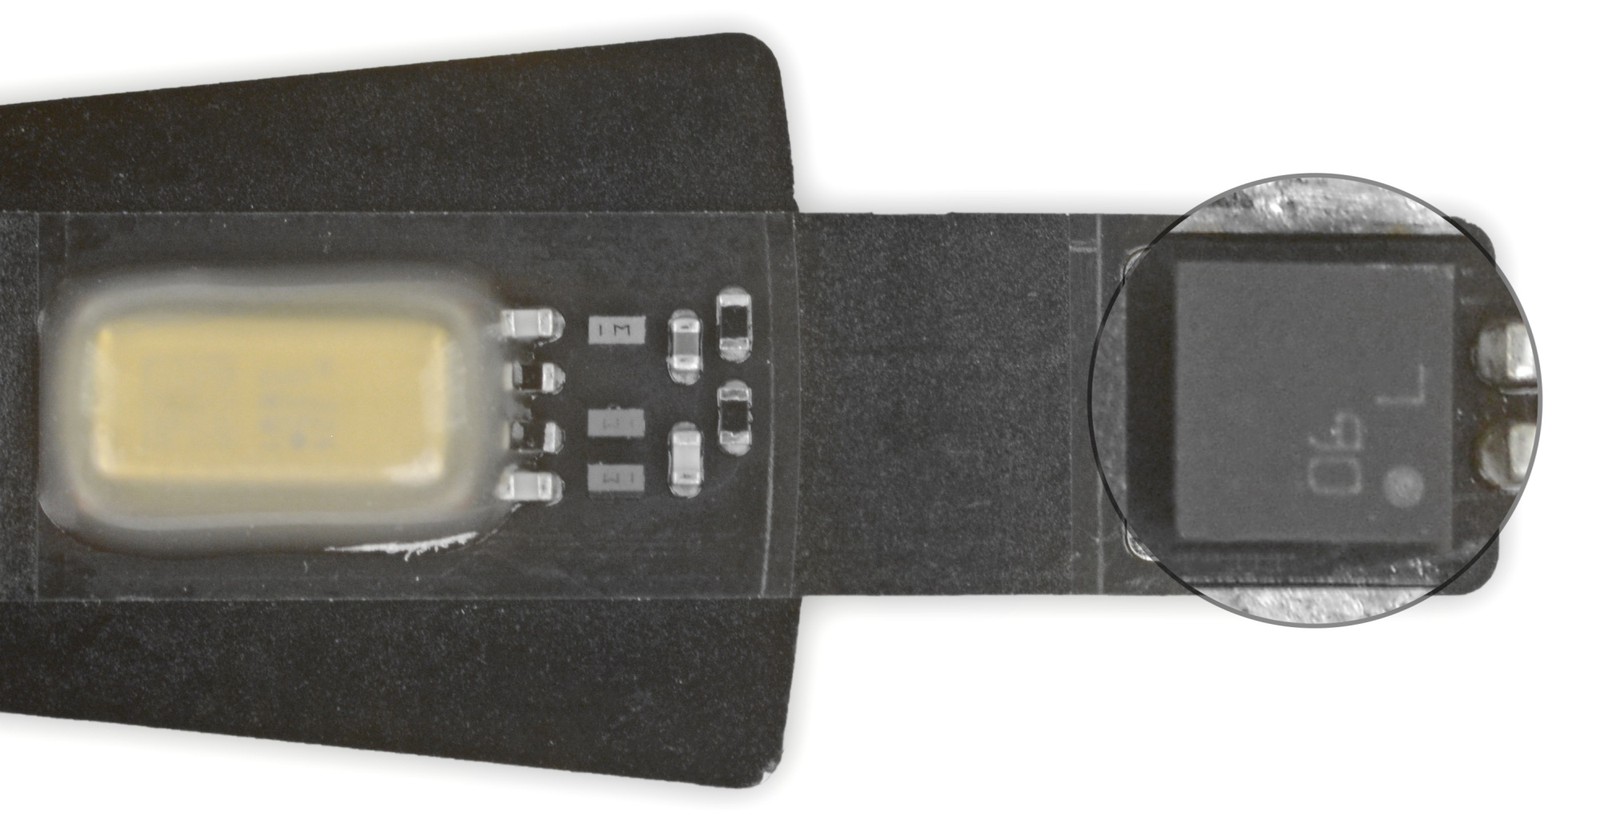 HomePod Mini được trang bị cảm biến đo nhiệt độ và độ ẩm nhưng chưa được kích hoạt